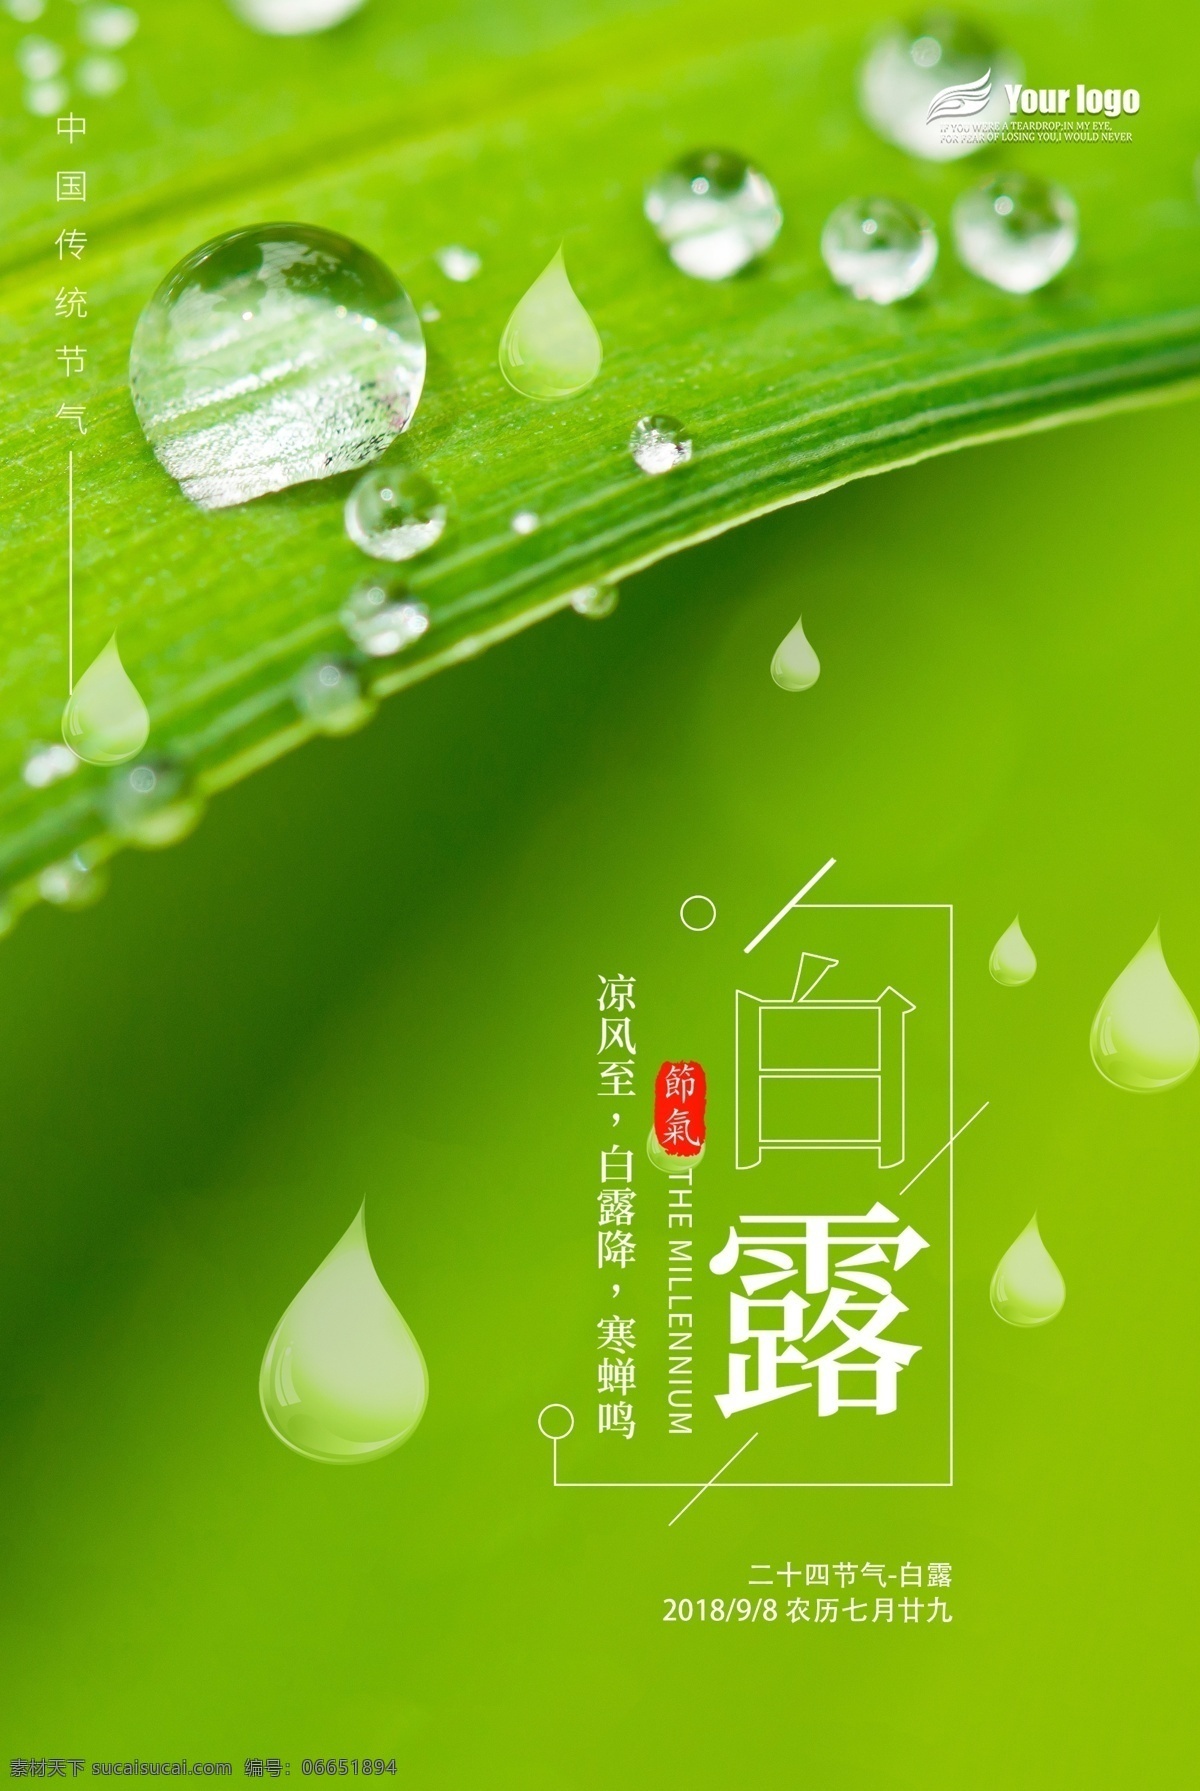 2018 年 白露 节气 海报 免费 模板 二十四节气 绿色清新 水珠 模板设计 节气海报设计 中国节气 免费模板